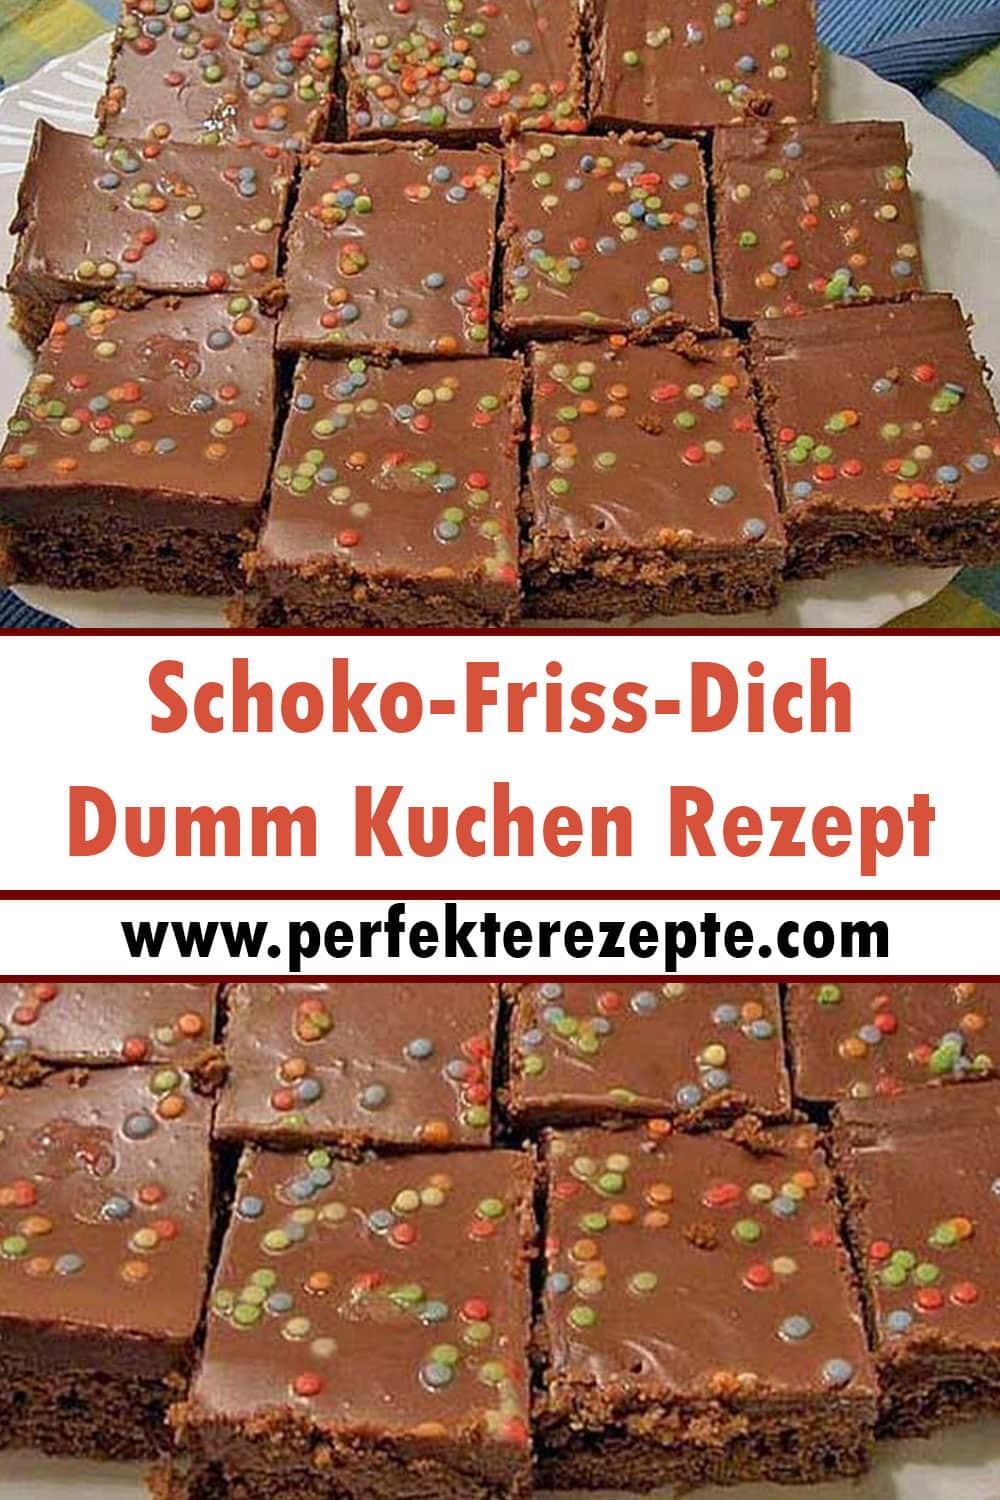 Schoko-Friss-Dich-Dumm Kuchen Rezept